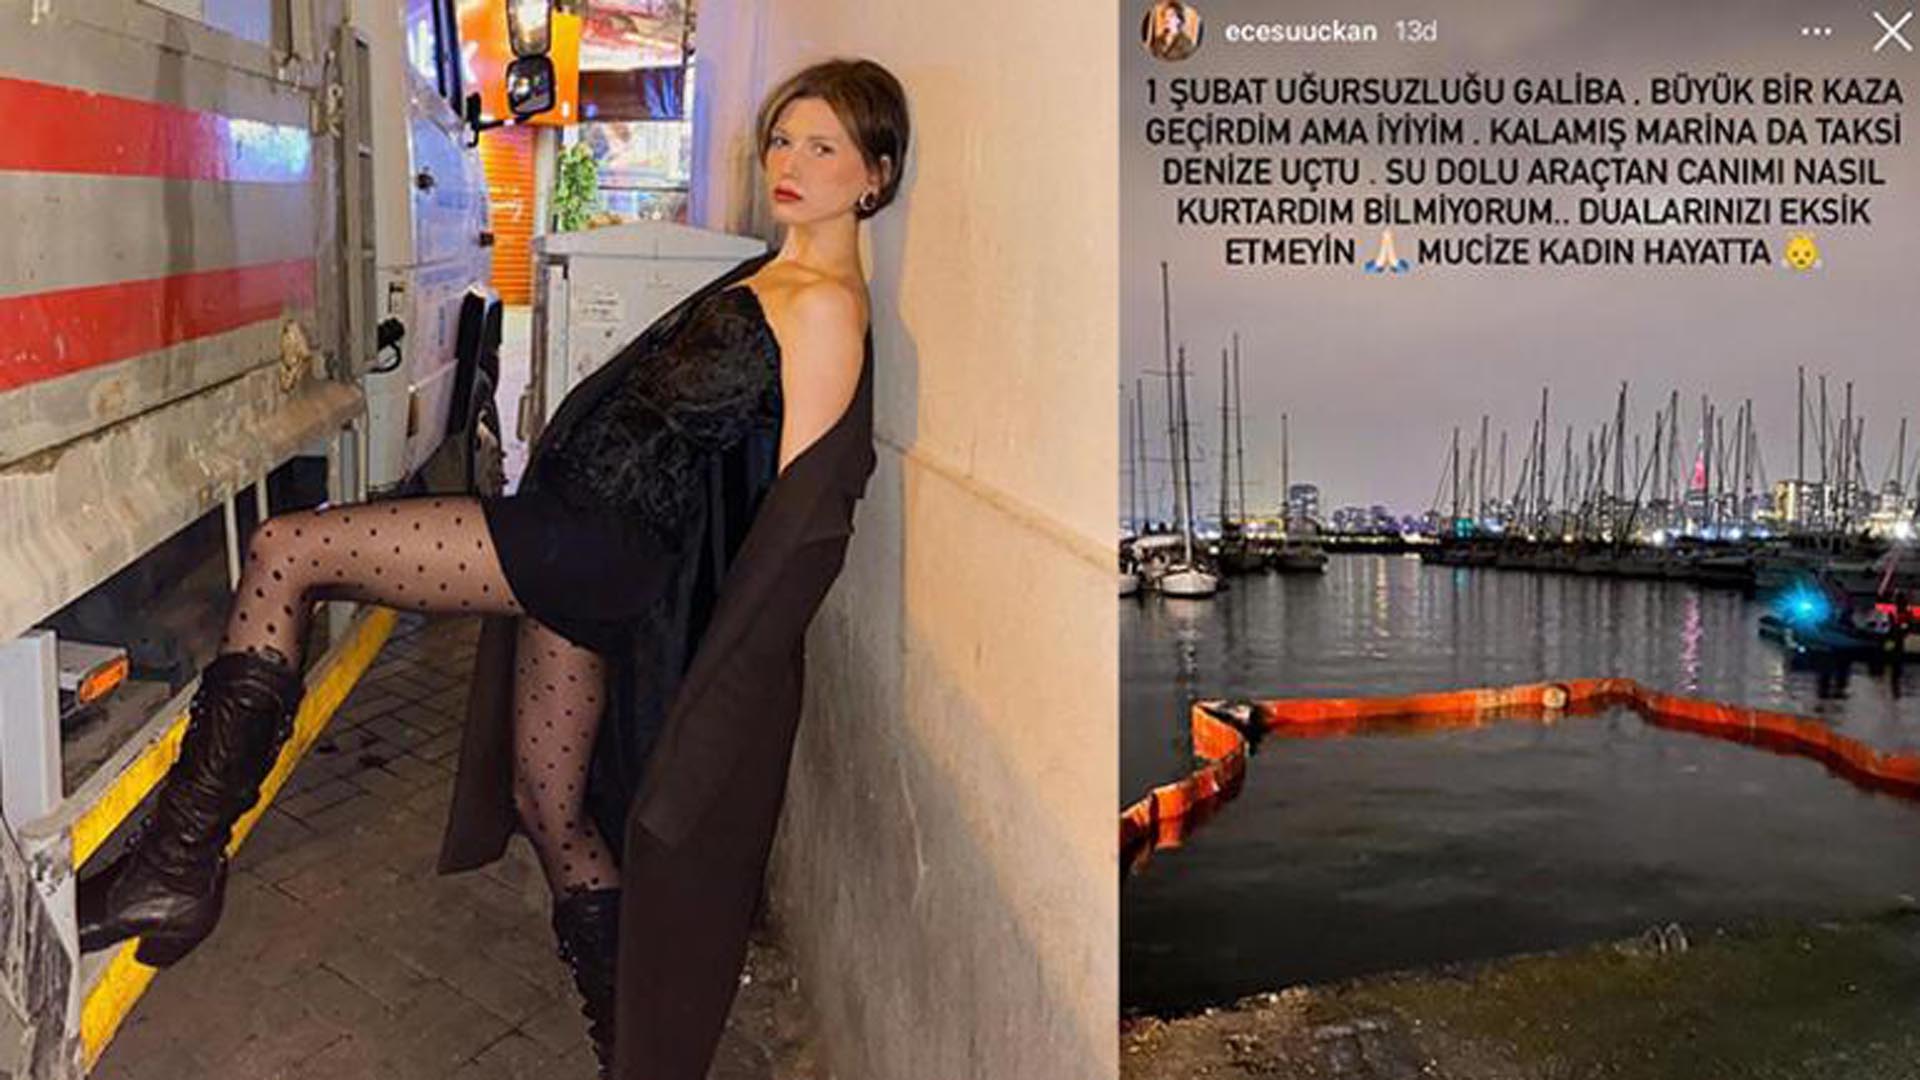 22 yaşındaki model Ece Su Uçkan Kalamış marinada taksi ile denize uçtu! Mucize kadın hayatta sözleri ile şok anlarını aktardı!